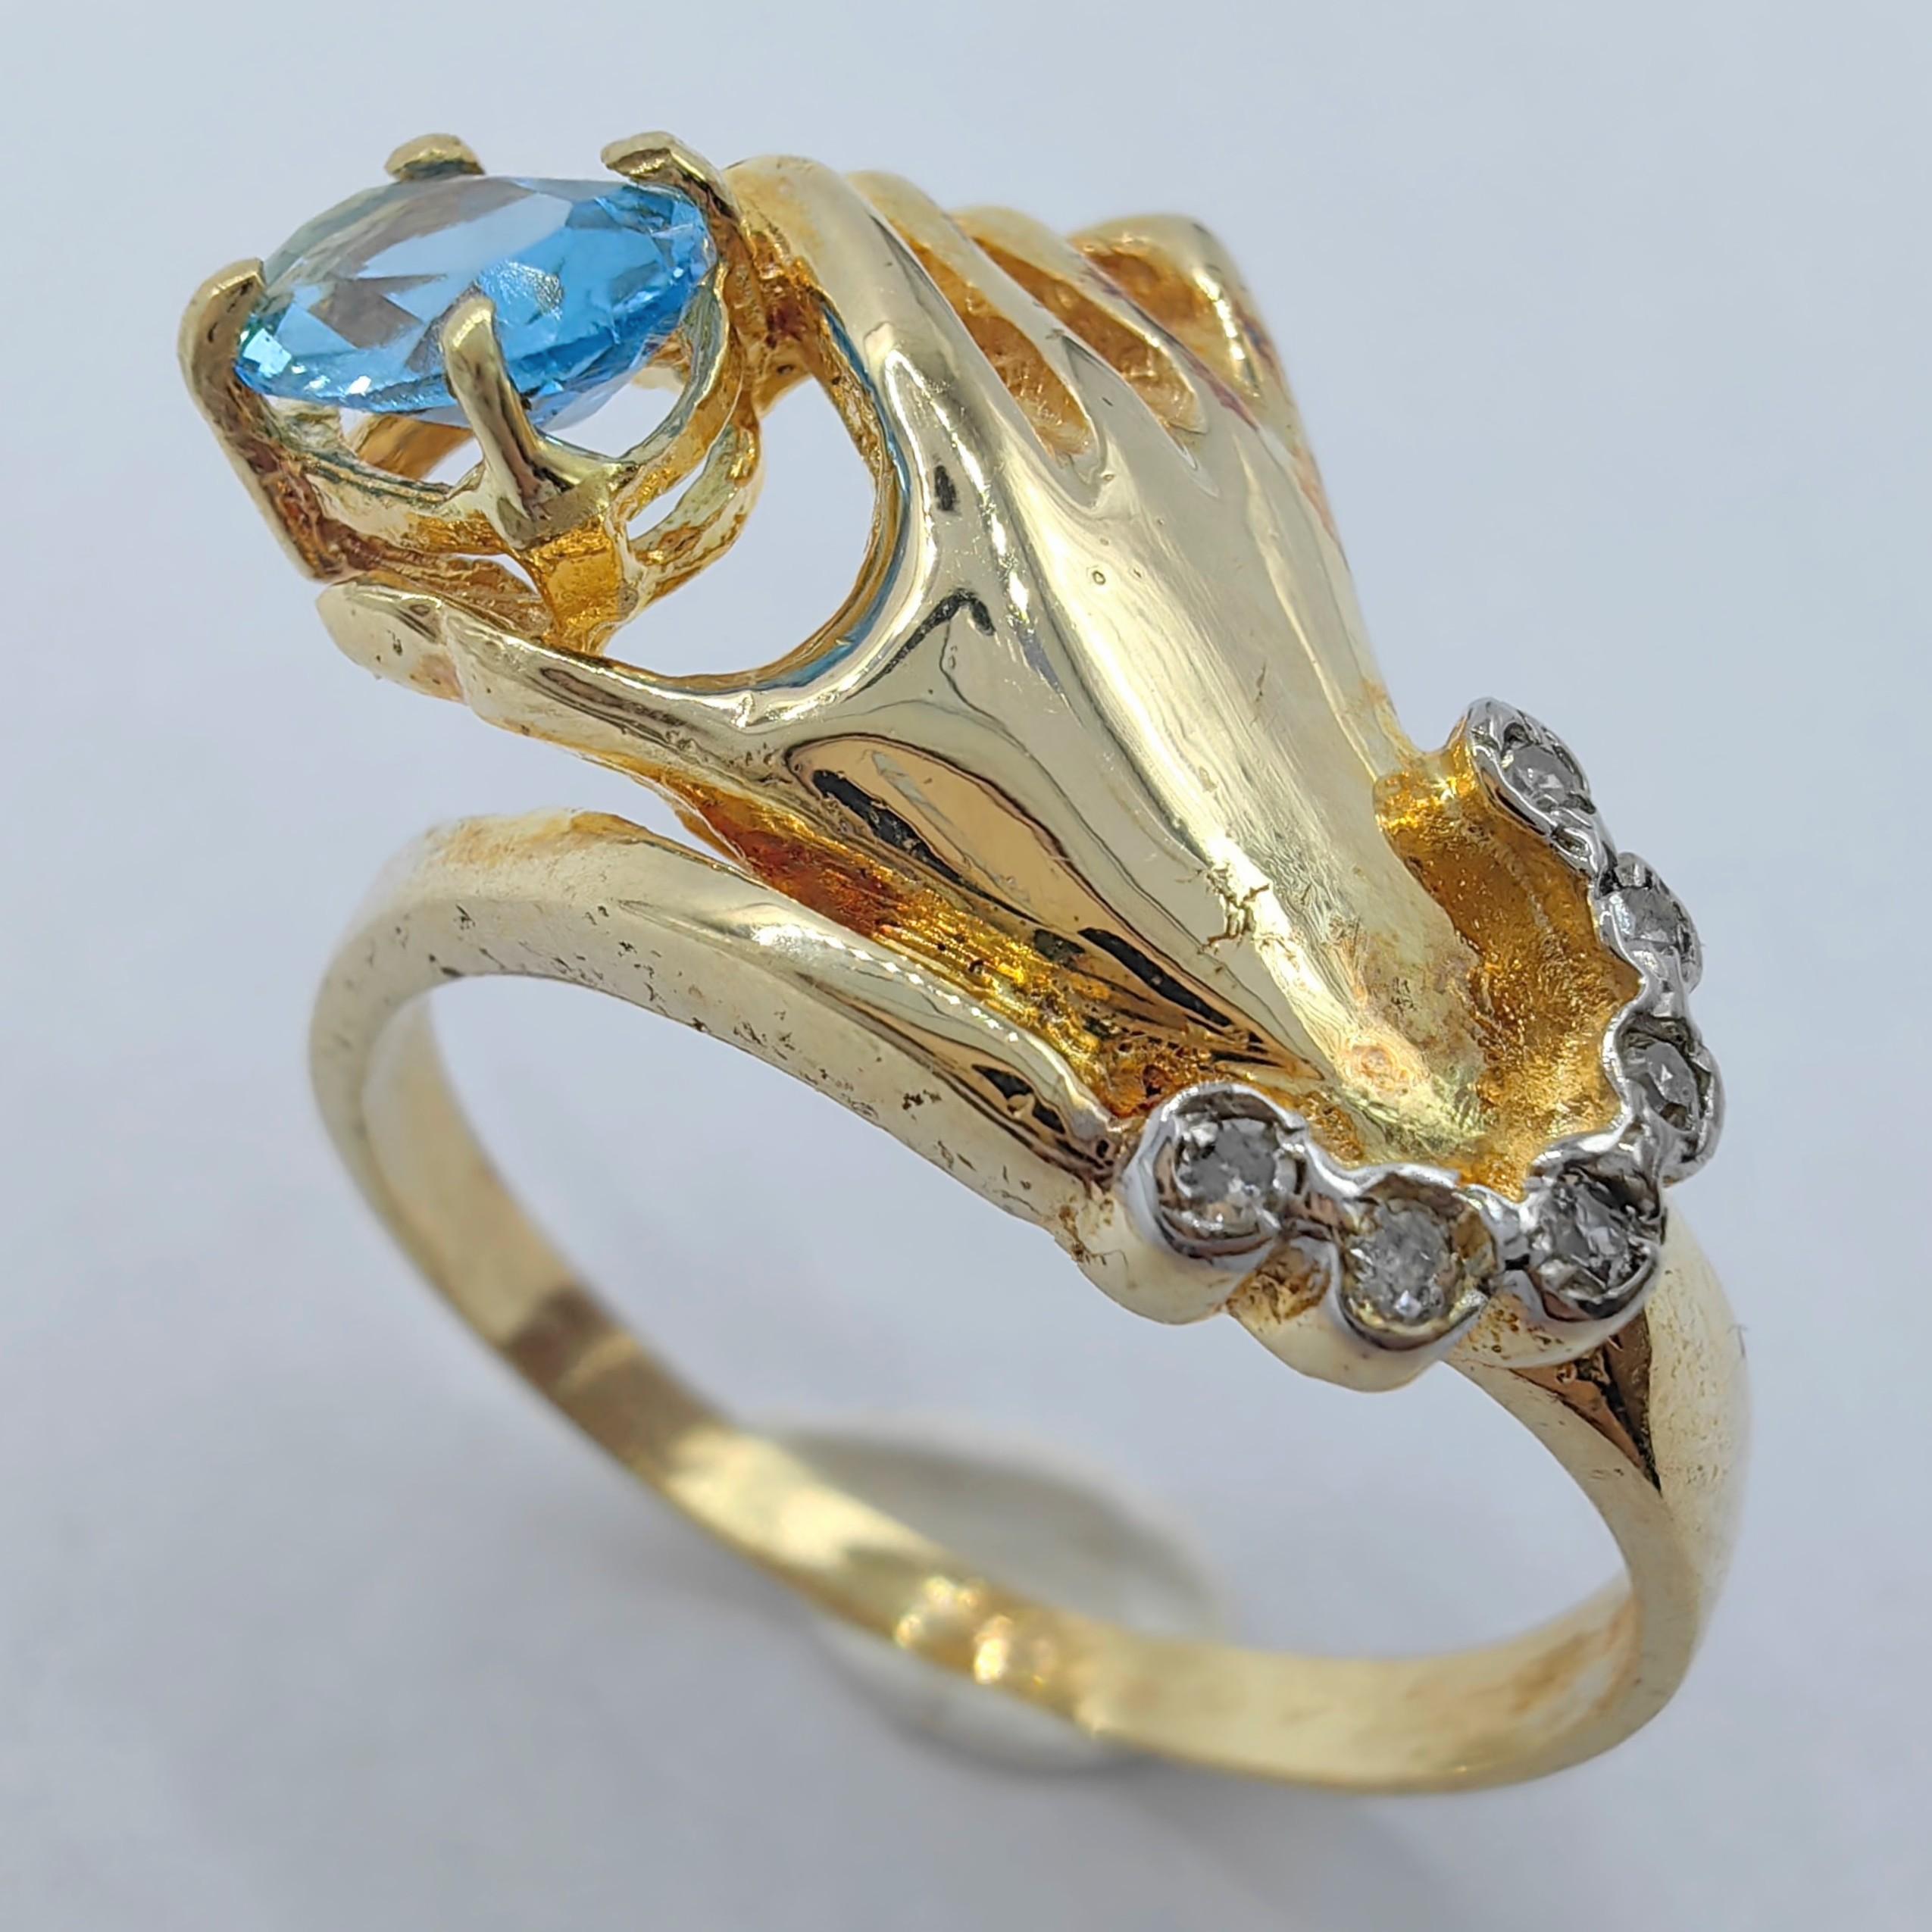 Unser exquisiter Blautopas im Ovalschliff in einem Hand-Diamantring aus 14 Karat Gelbgold ist ein Symbol für Eleganz und Anmut. Dieser einzigartige Ring zeigt ein wunderschön gearbeitetes Handmotiv aus 14-karätigem Gelbgold, das einen